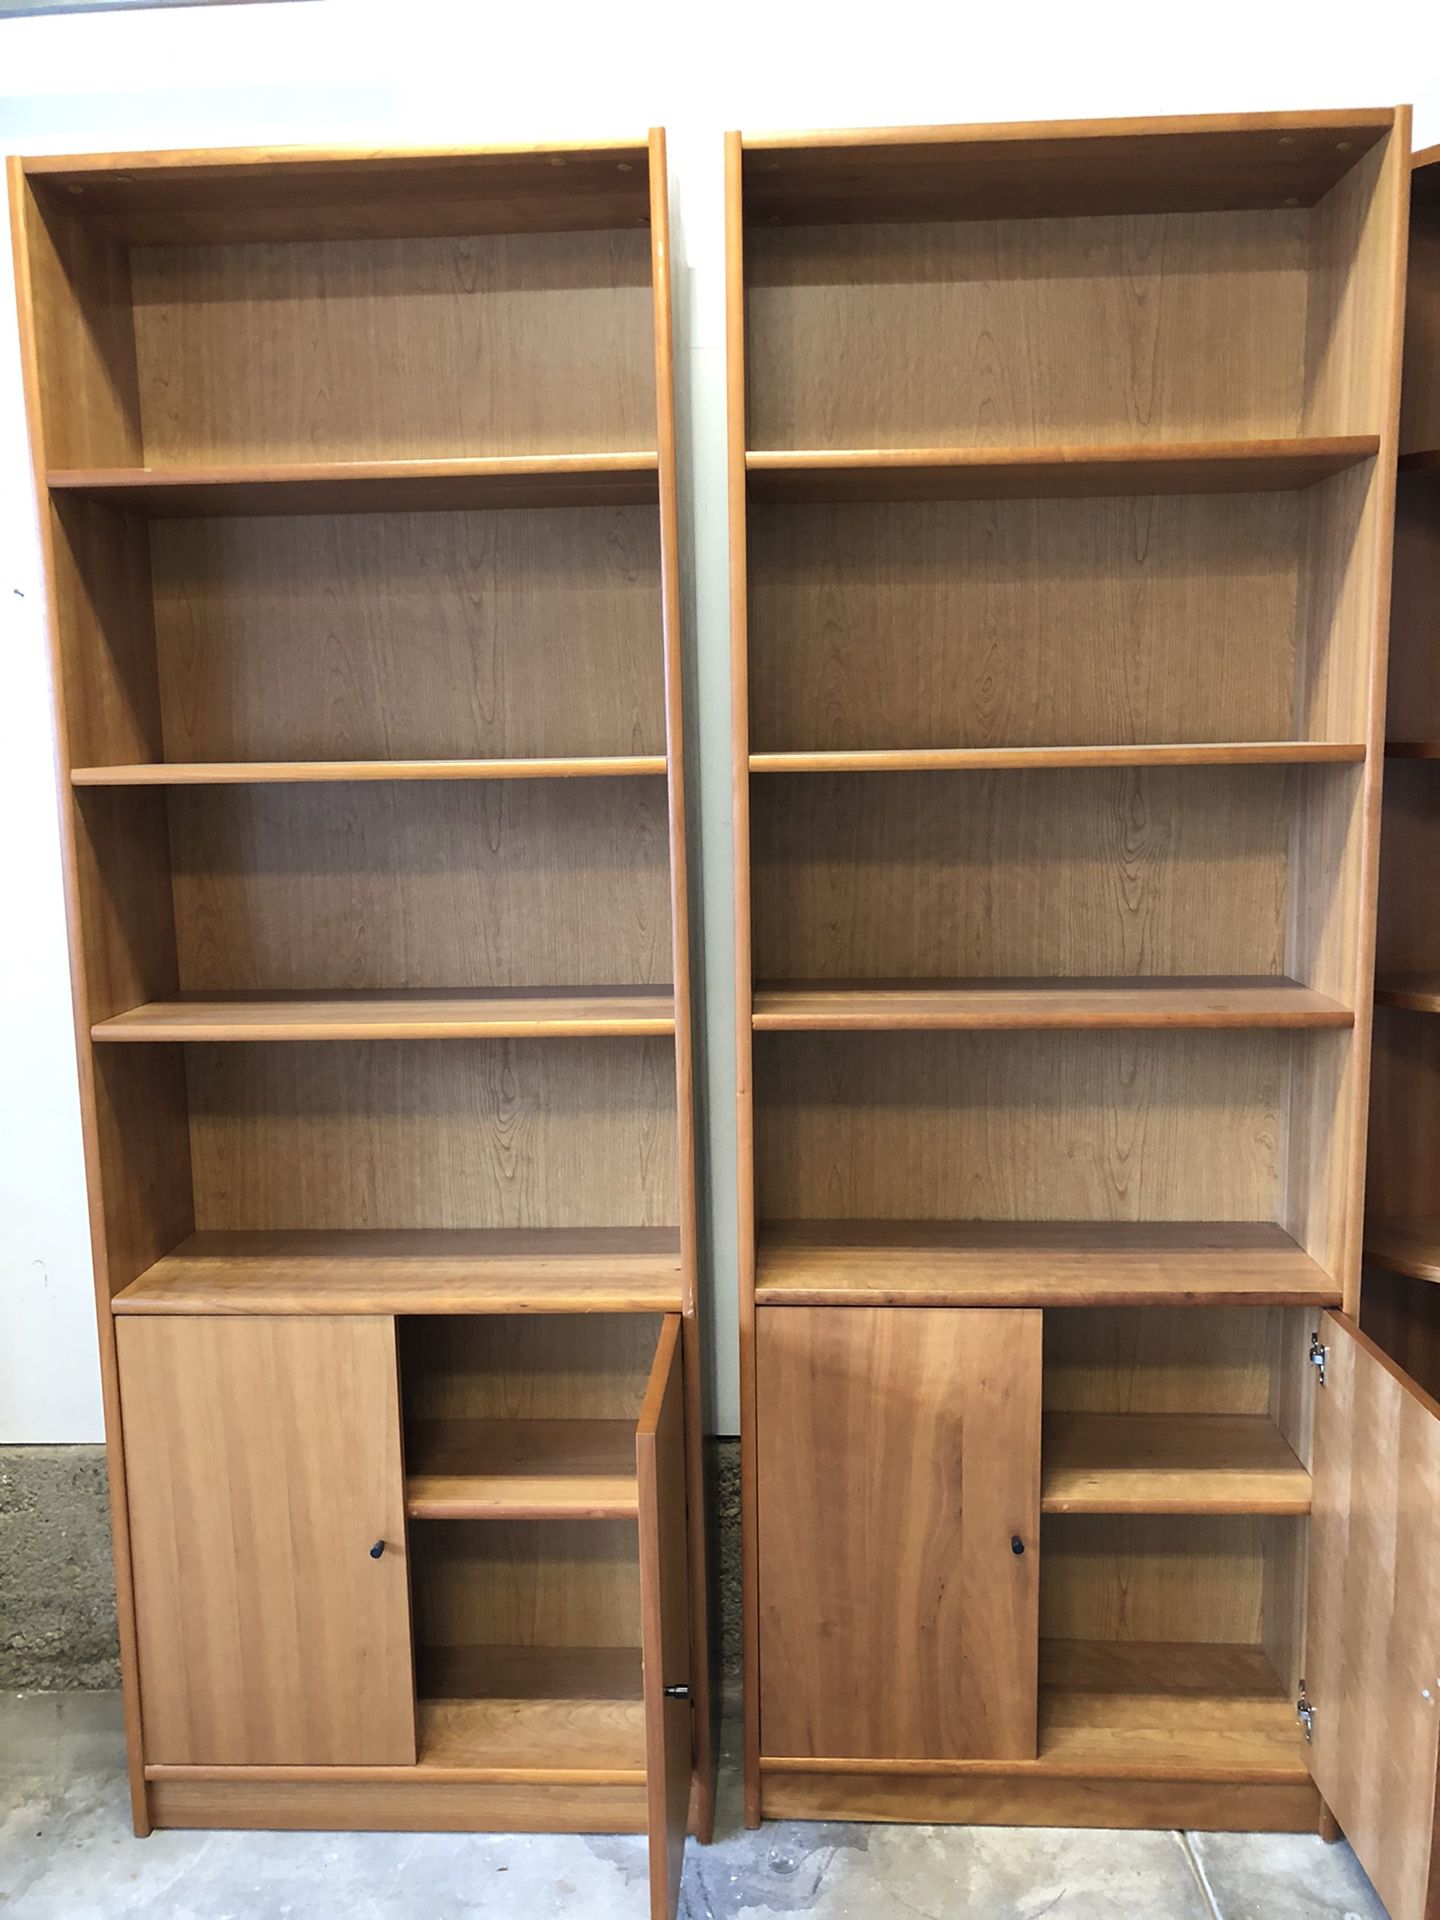 Danish Modern bookshelves